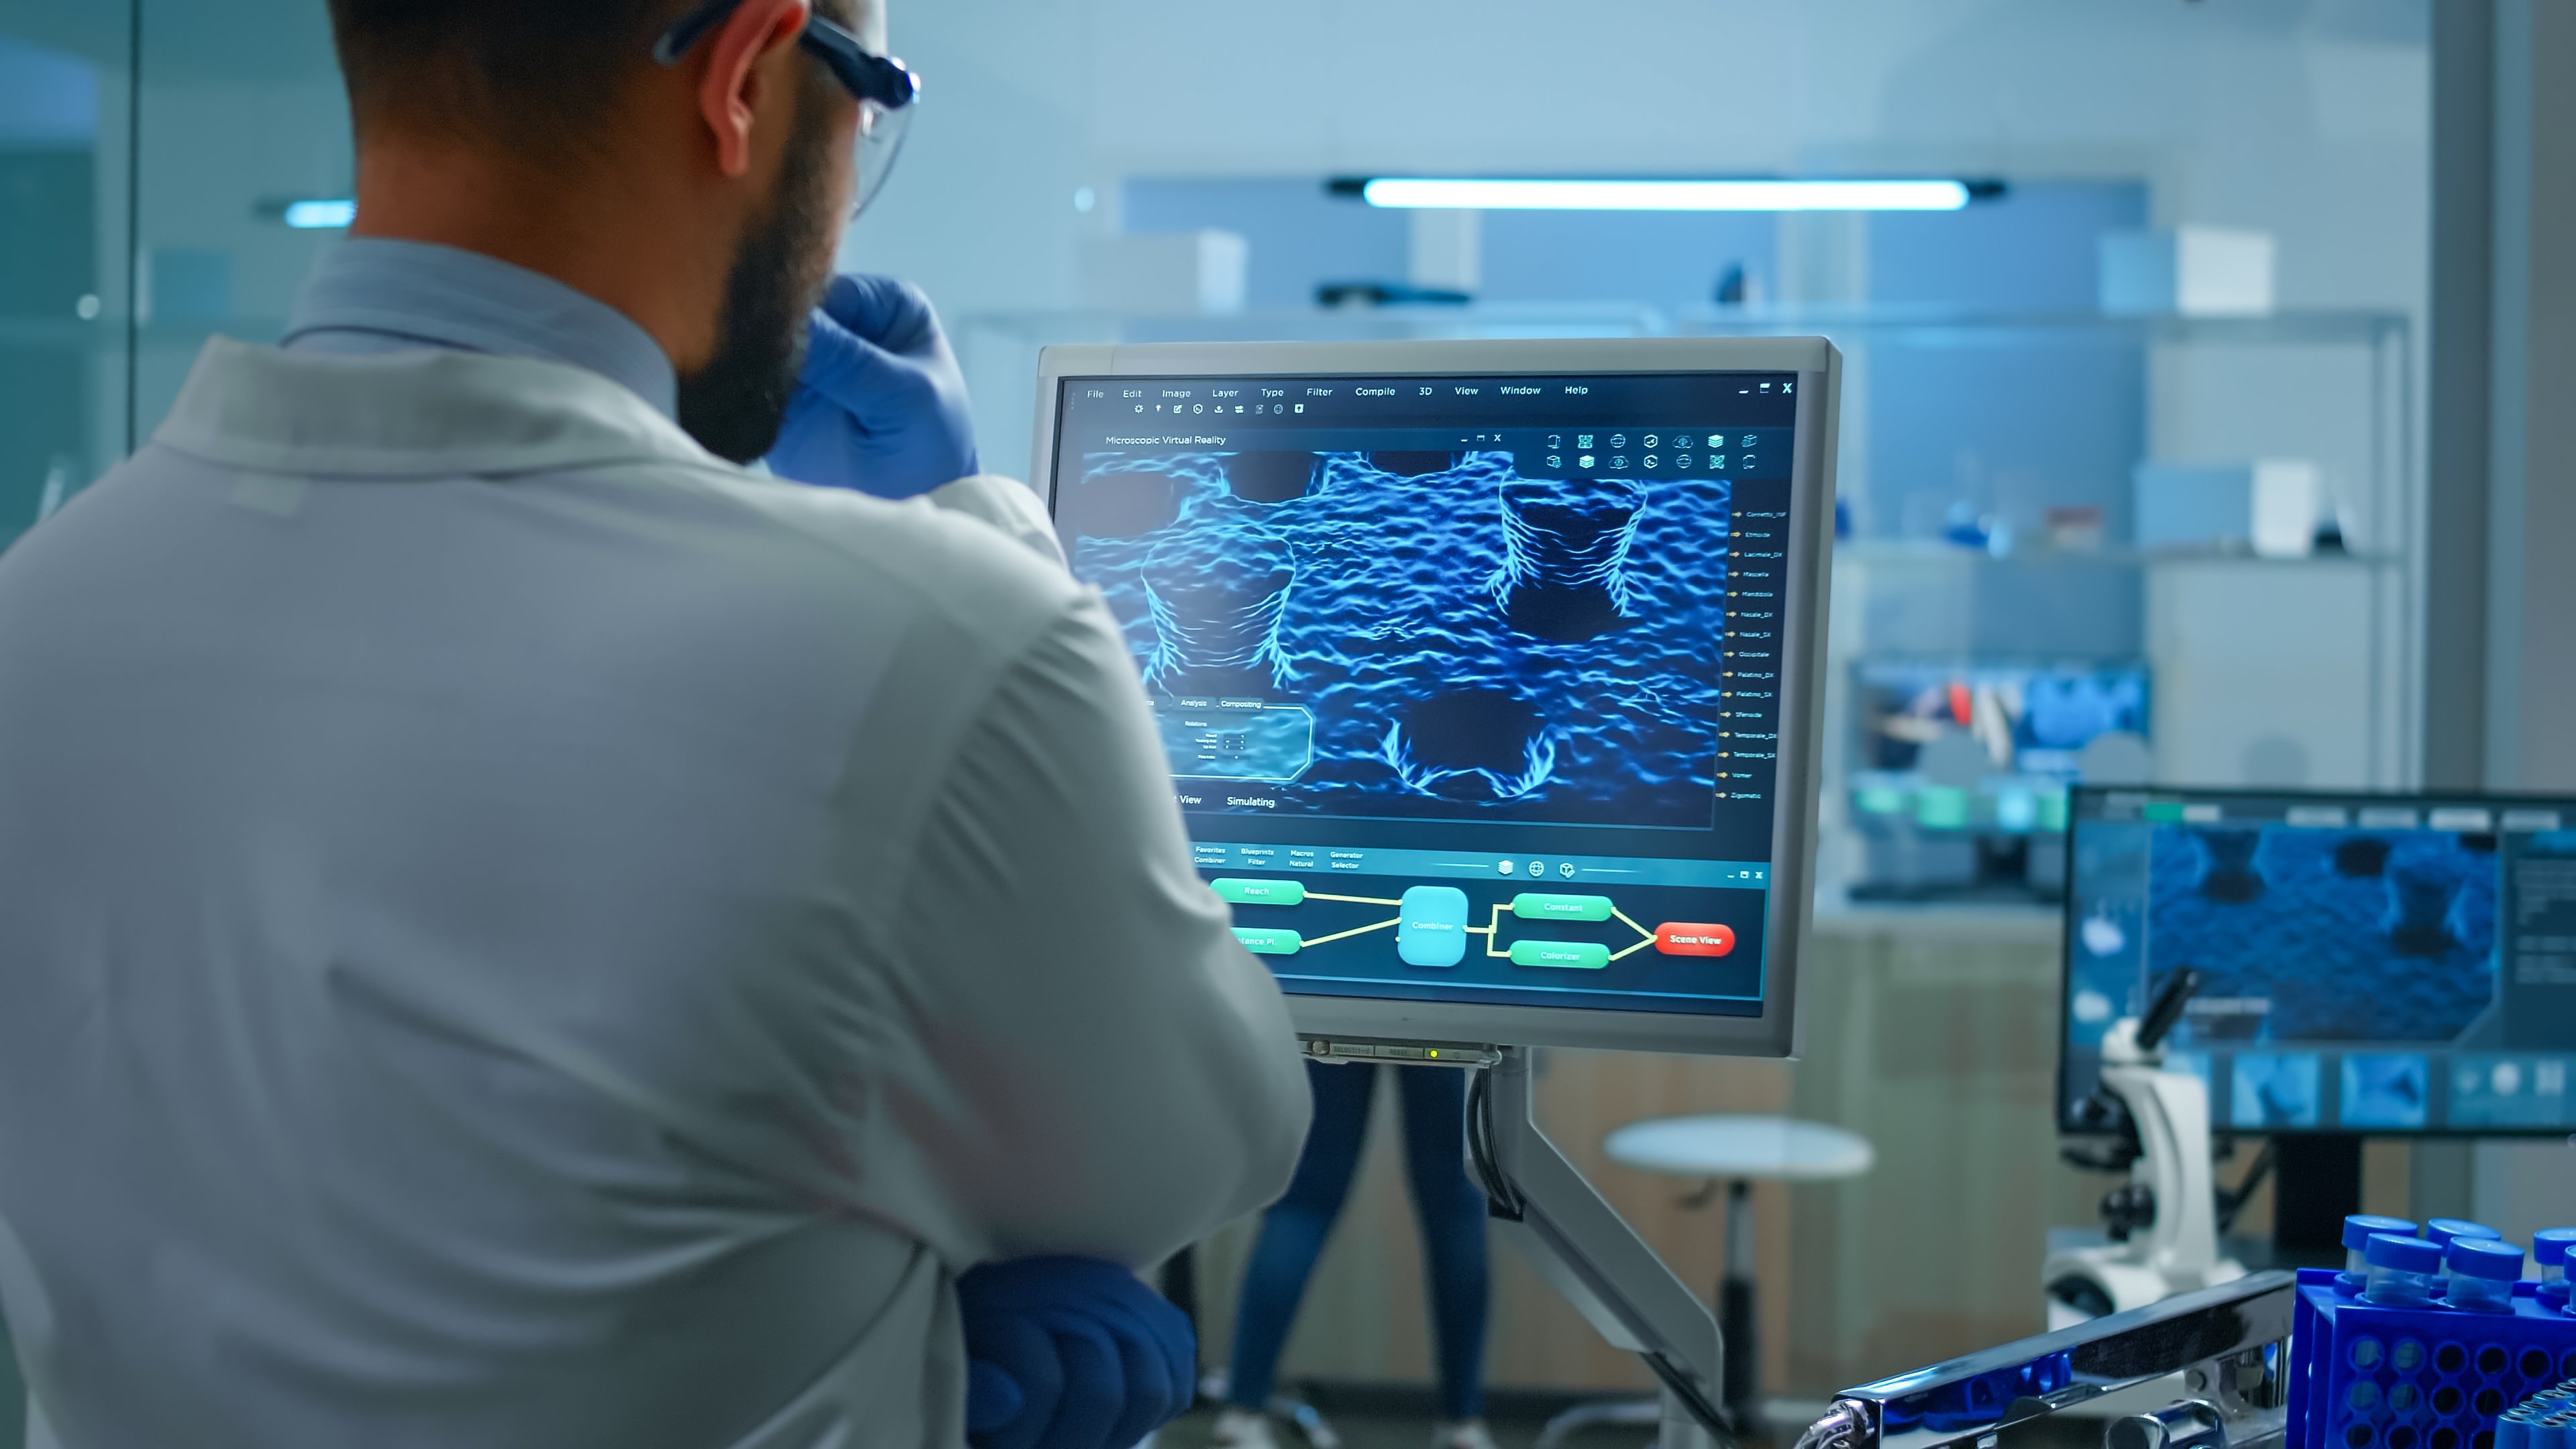 Imagem contendo um médico analisando as imagens em 3D que aparecem em uma tela. No fundo é possível notar que a imagem é ambienta em um laboratório médico.